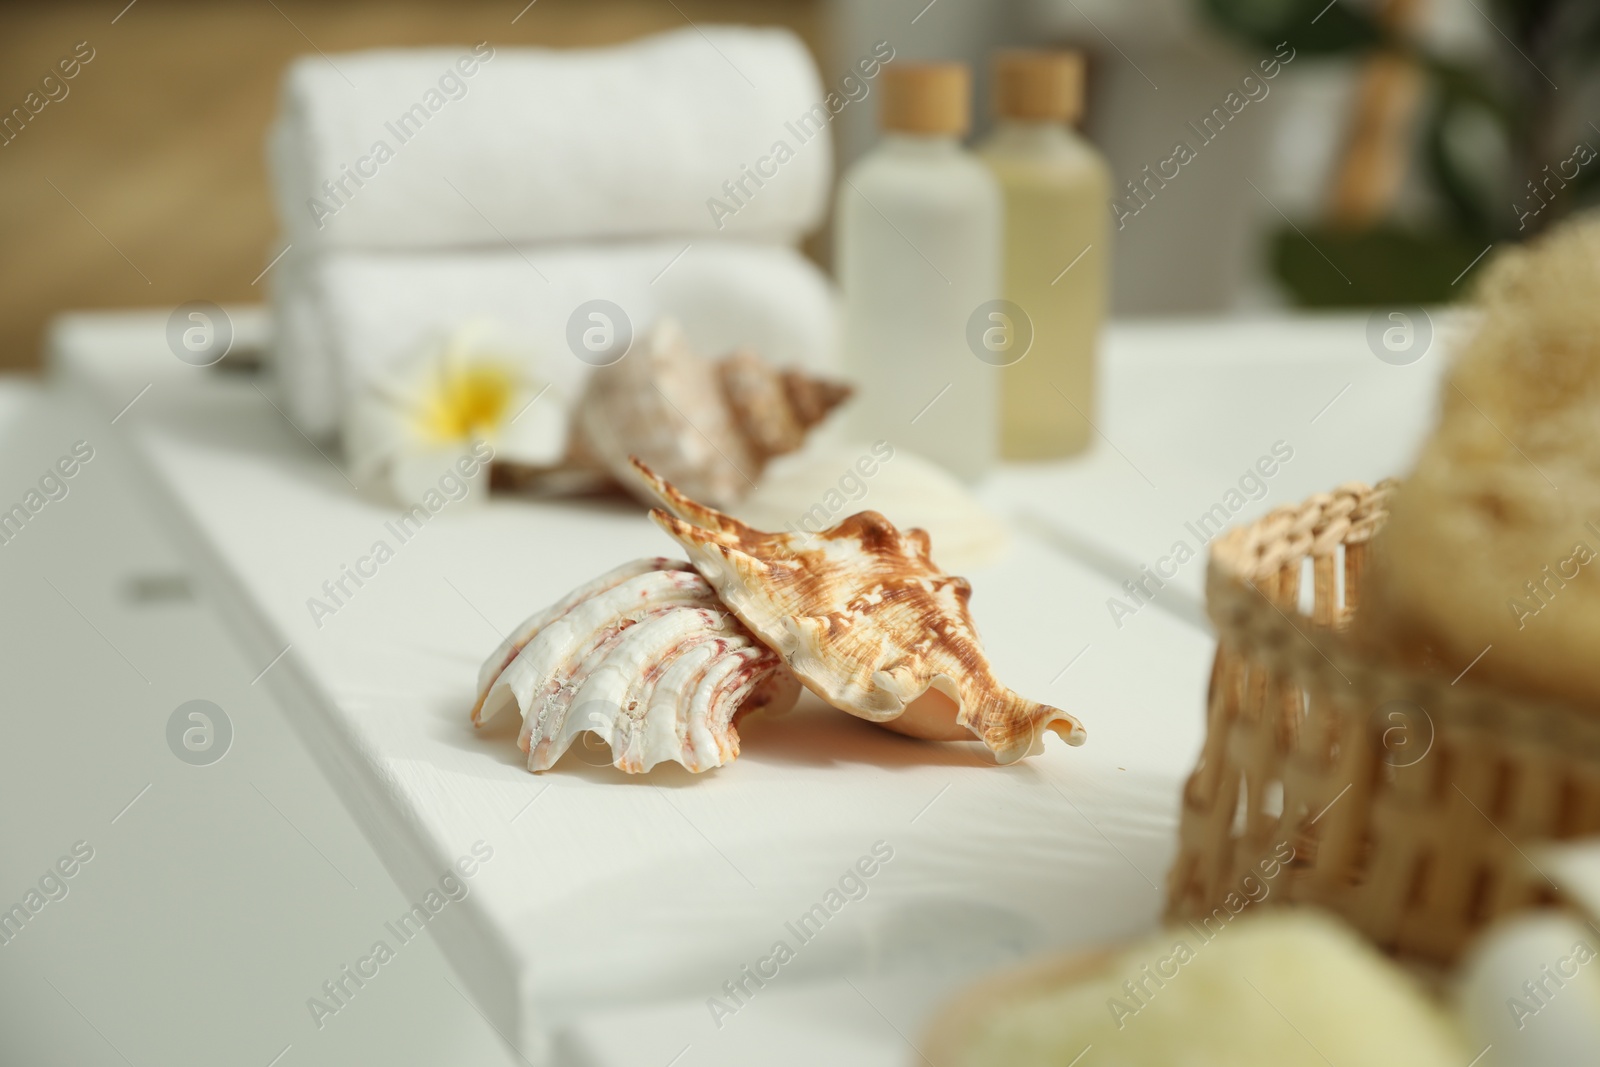 Photo of Bath tray with shells on tub in bathroom, closeup